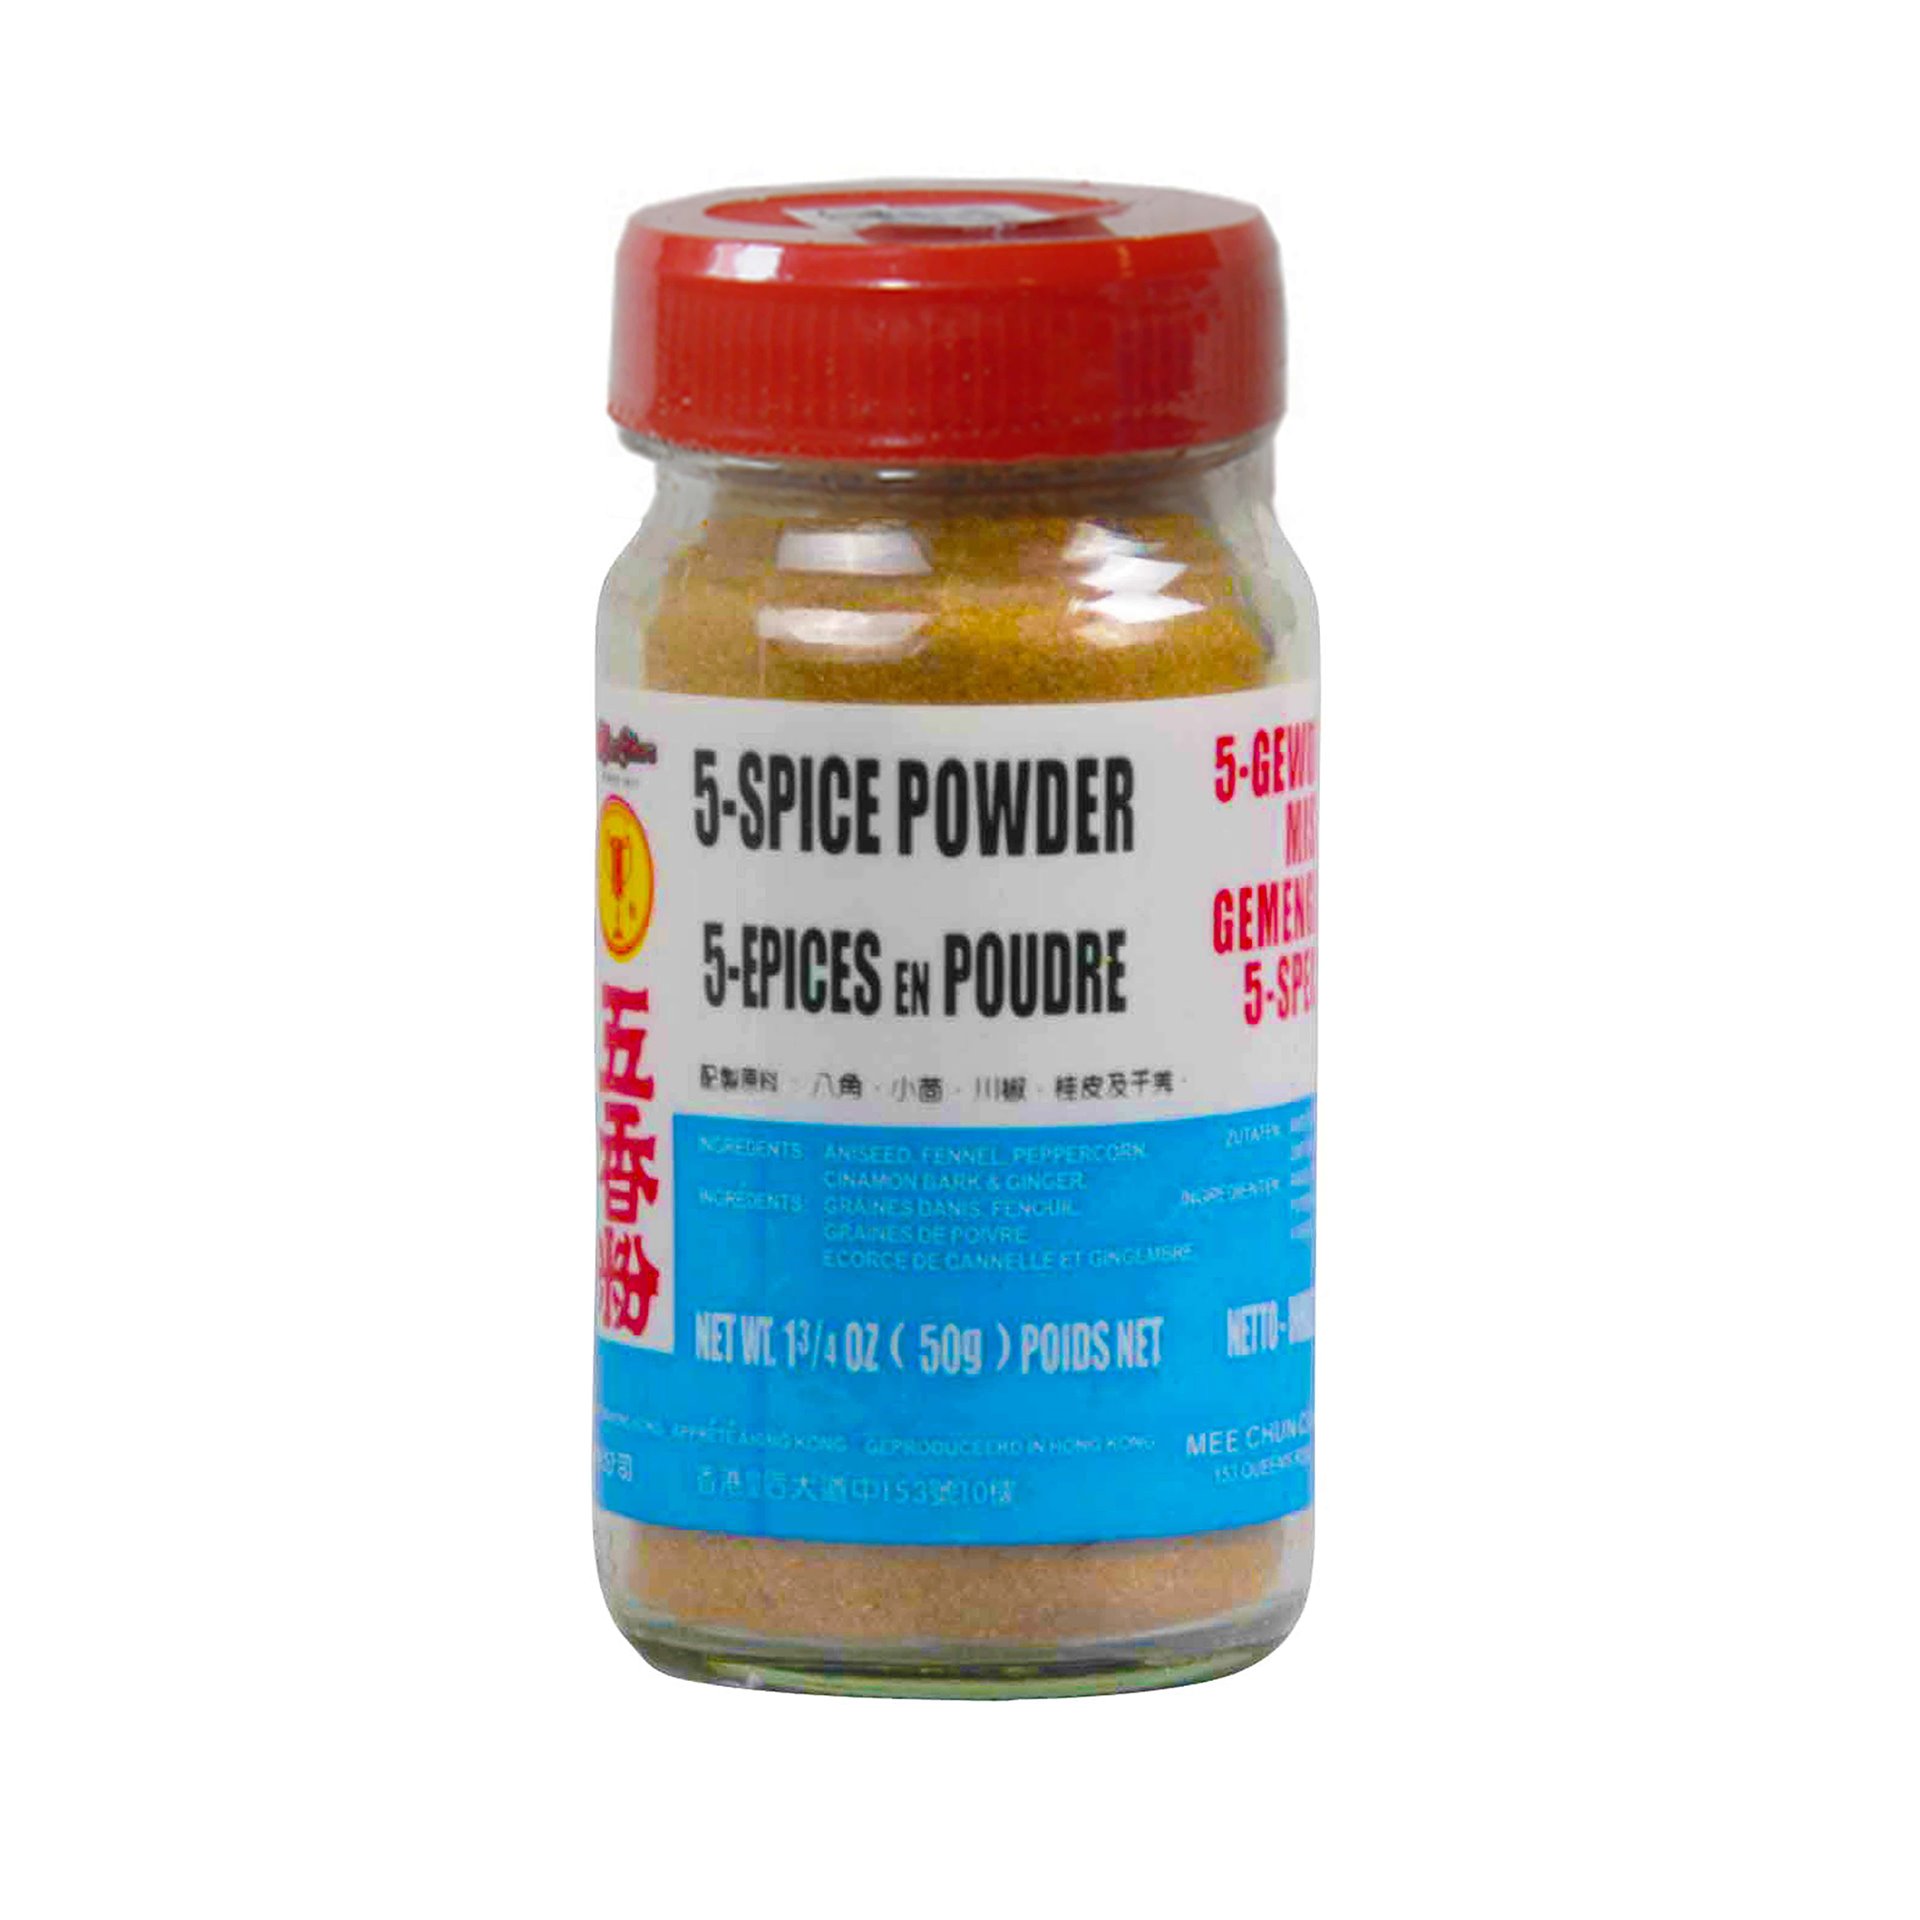 CH 5 Spices Powder - Beagley Copperman